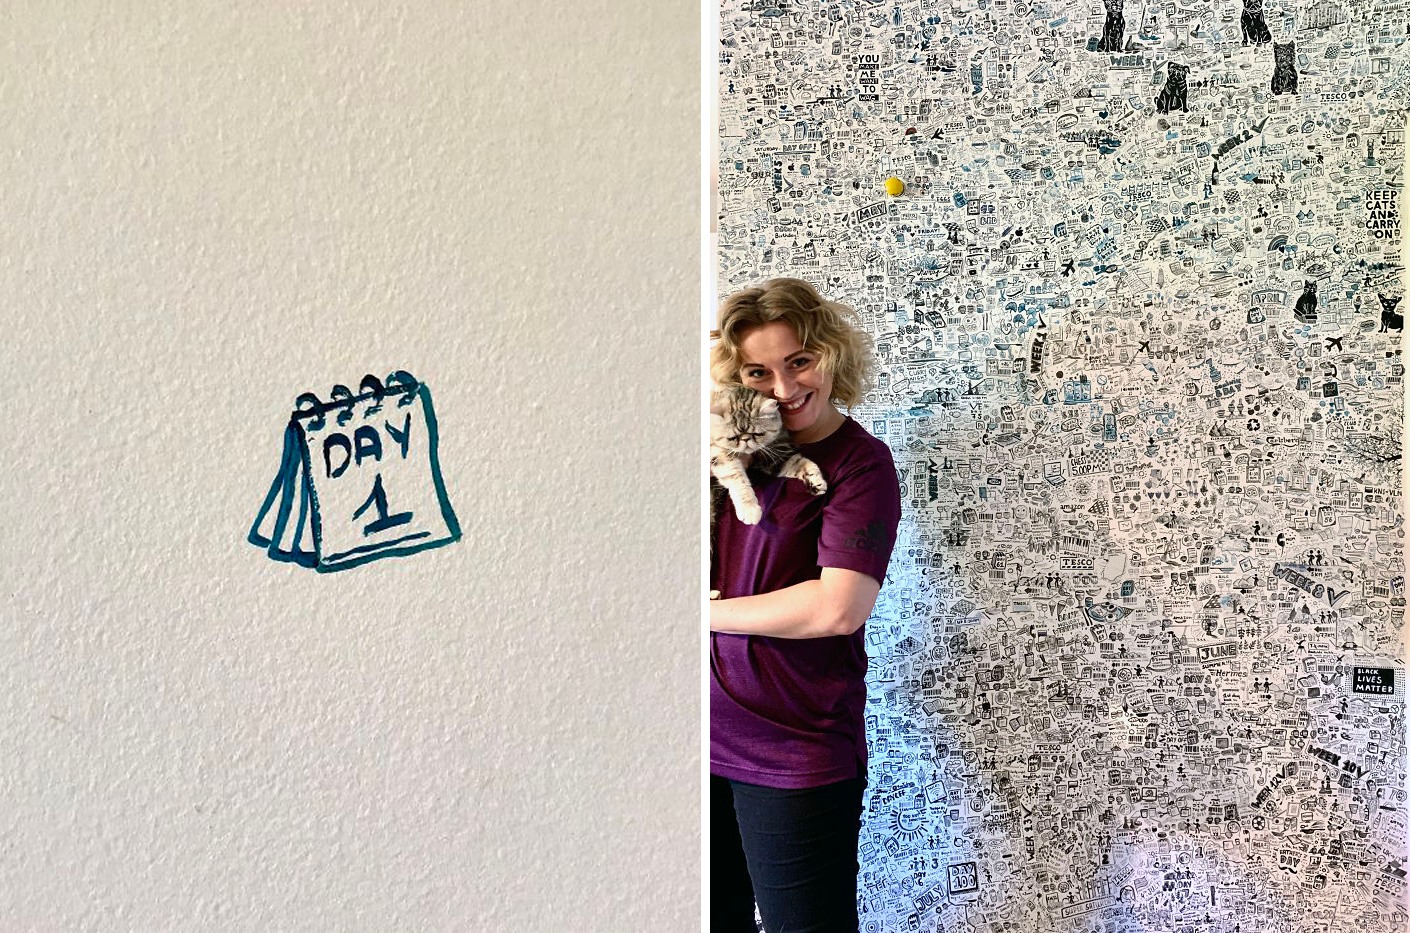 Ở nhà cách ly hơn 100 ngày, nữ họa sĩ khéo tay ngày nào cũng họa nhật kí khắp tường với thông điệp cực đáng yêu - Ảnh 1.